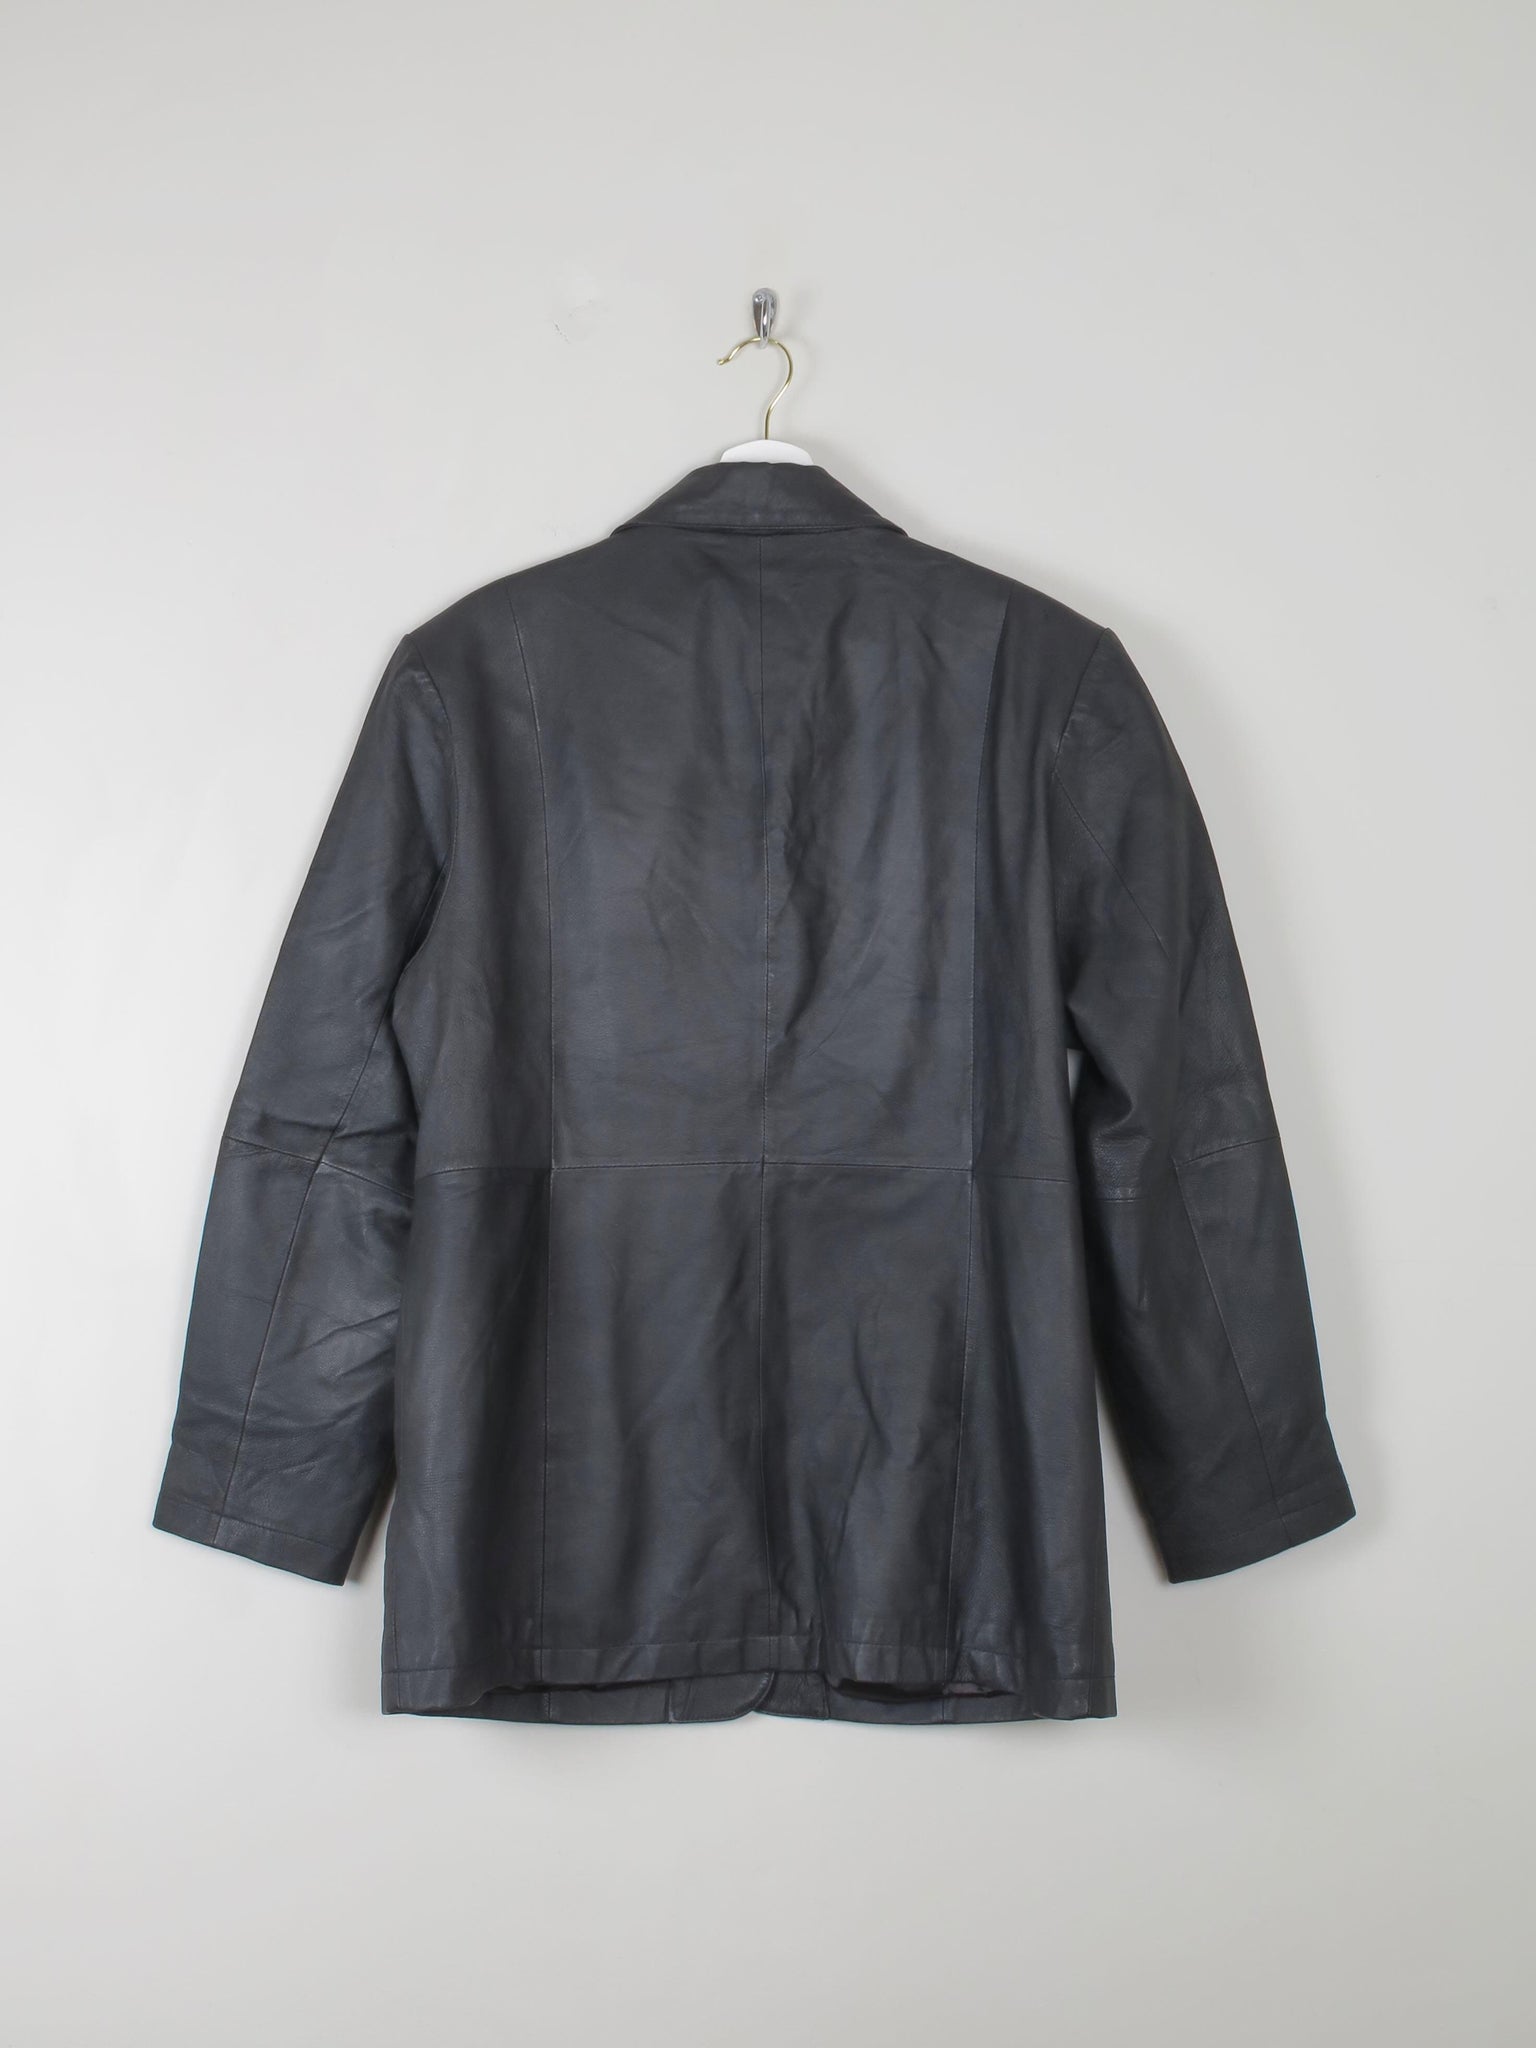 Women's Vintage Black Leather Jacket L - The Harlequin